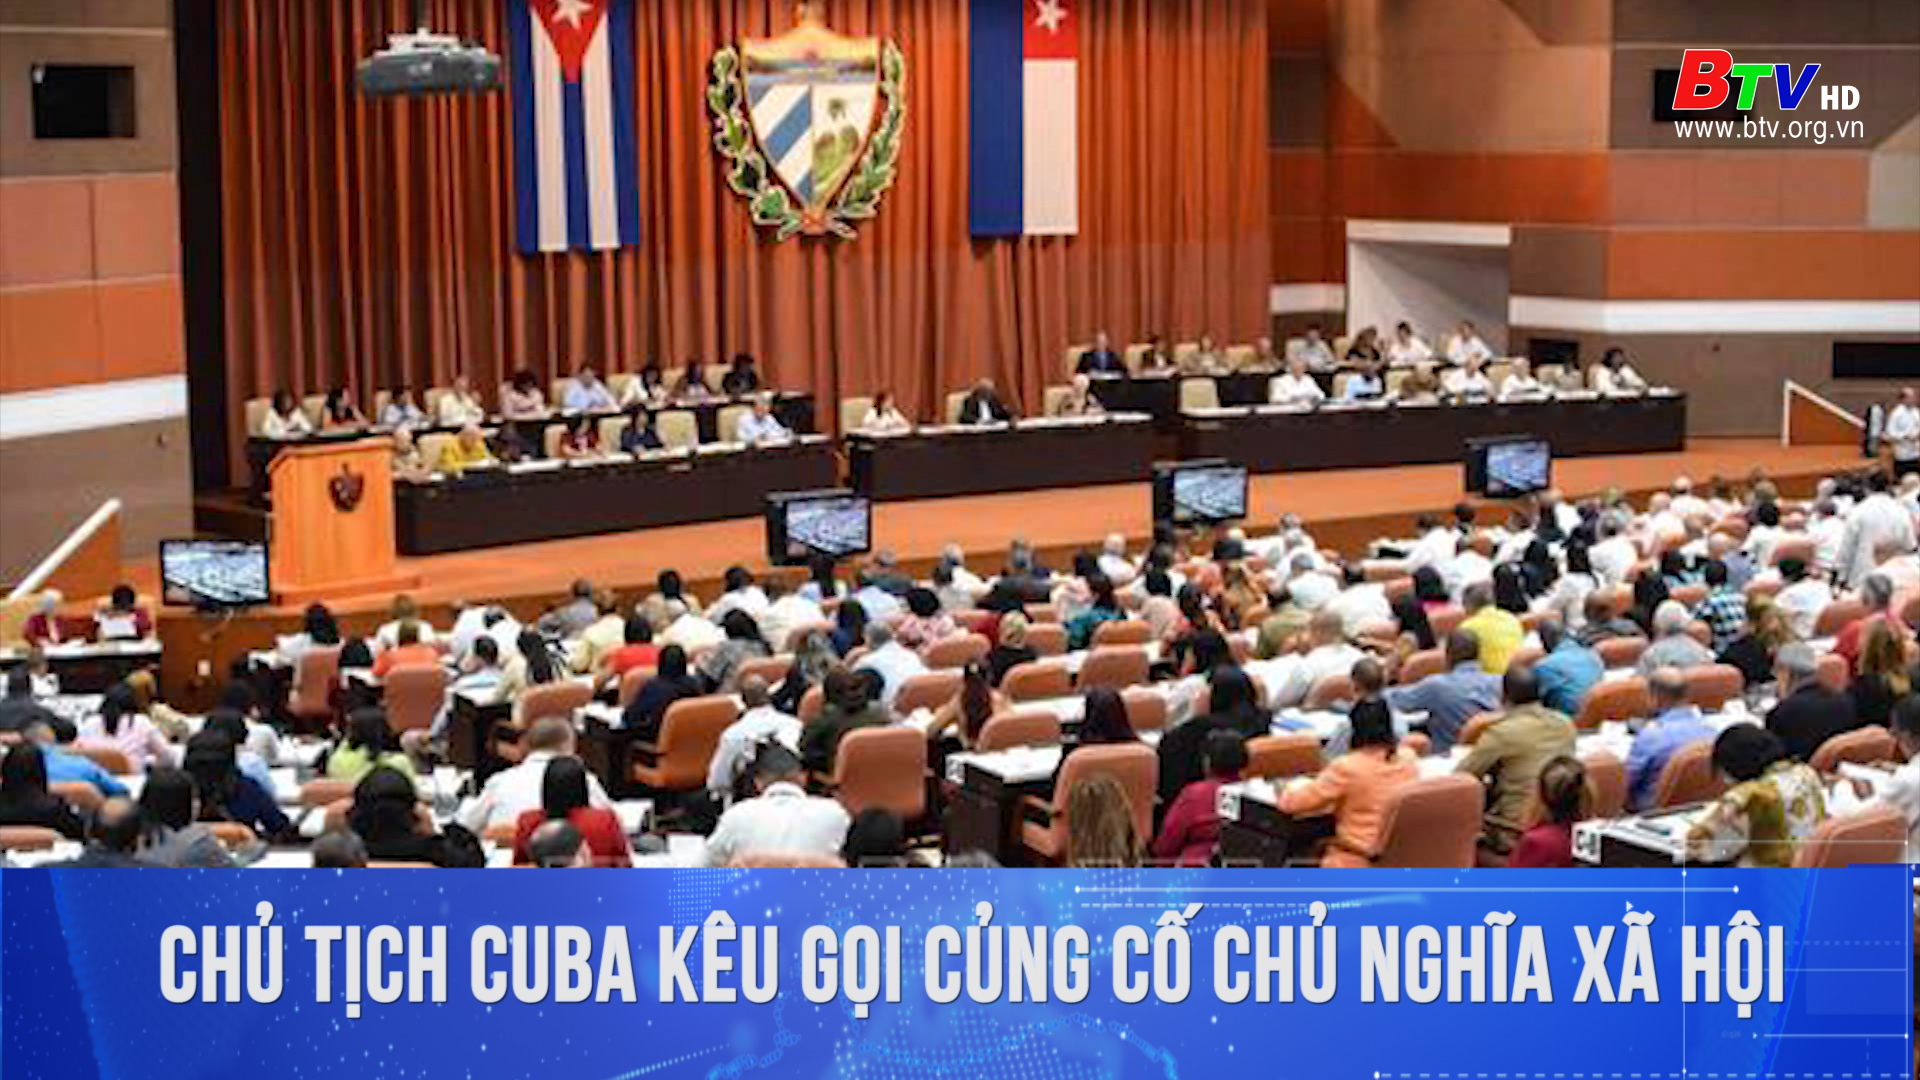 Chủ tịch Cuba kêu gọi củng cố Chủ nghĩa xã hội